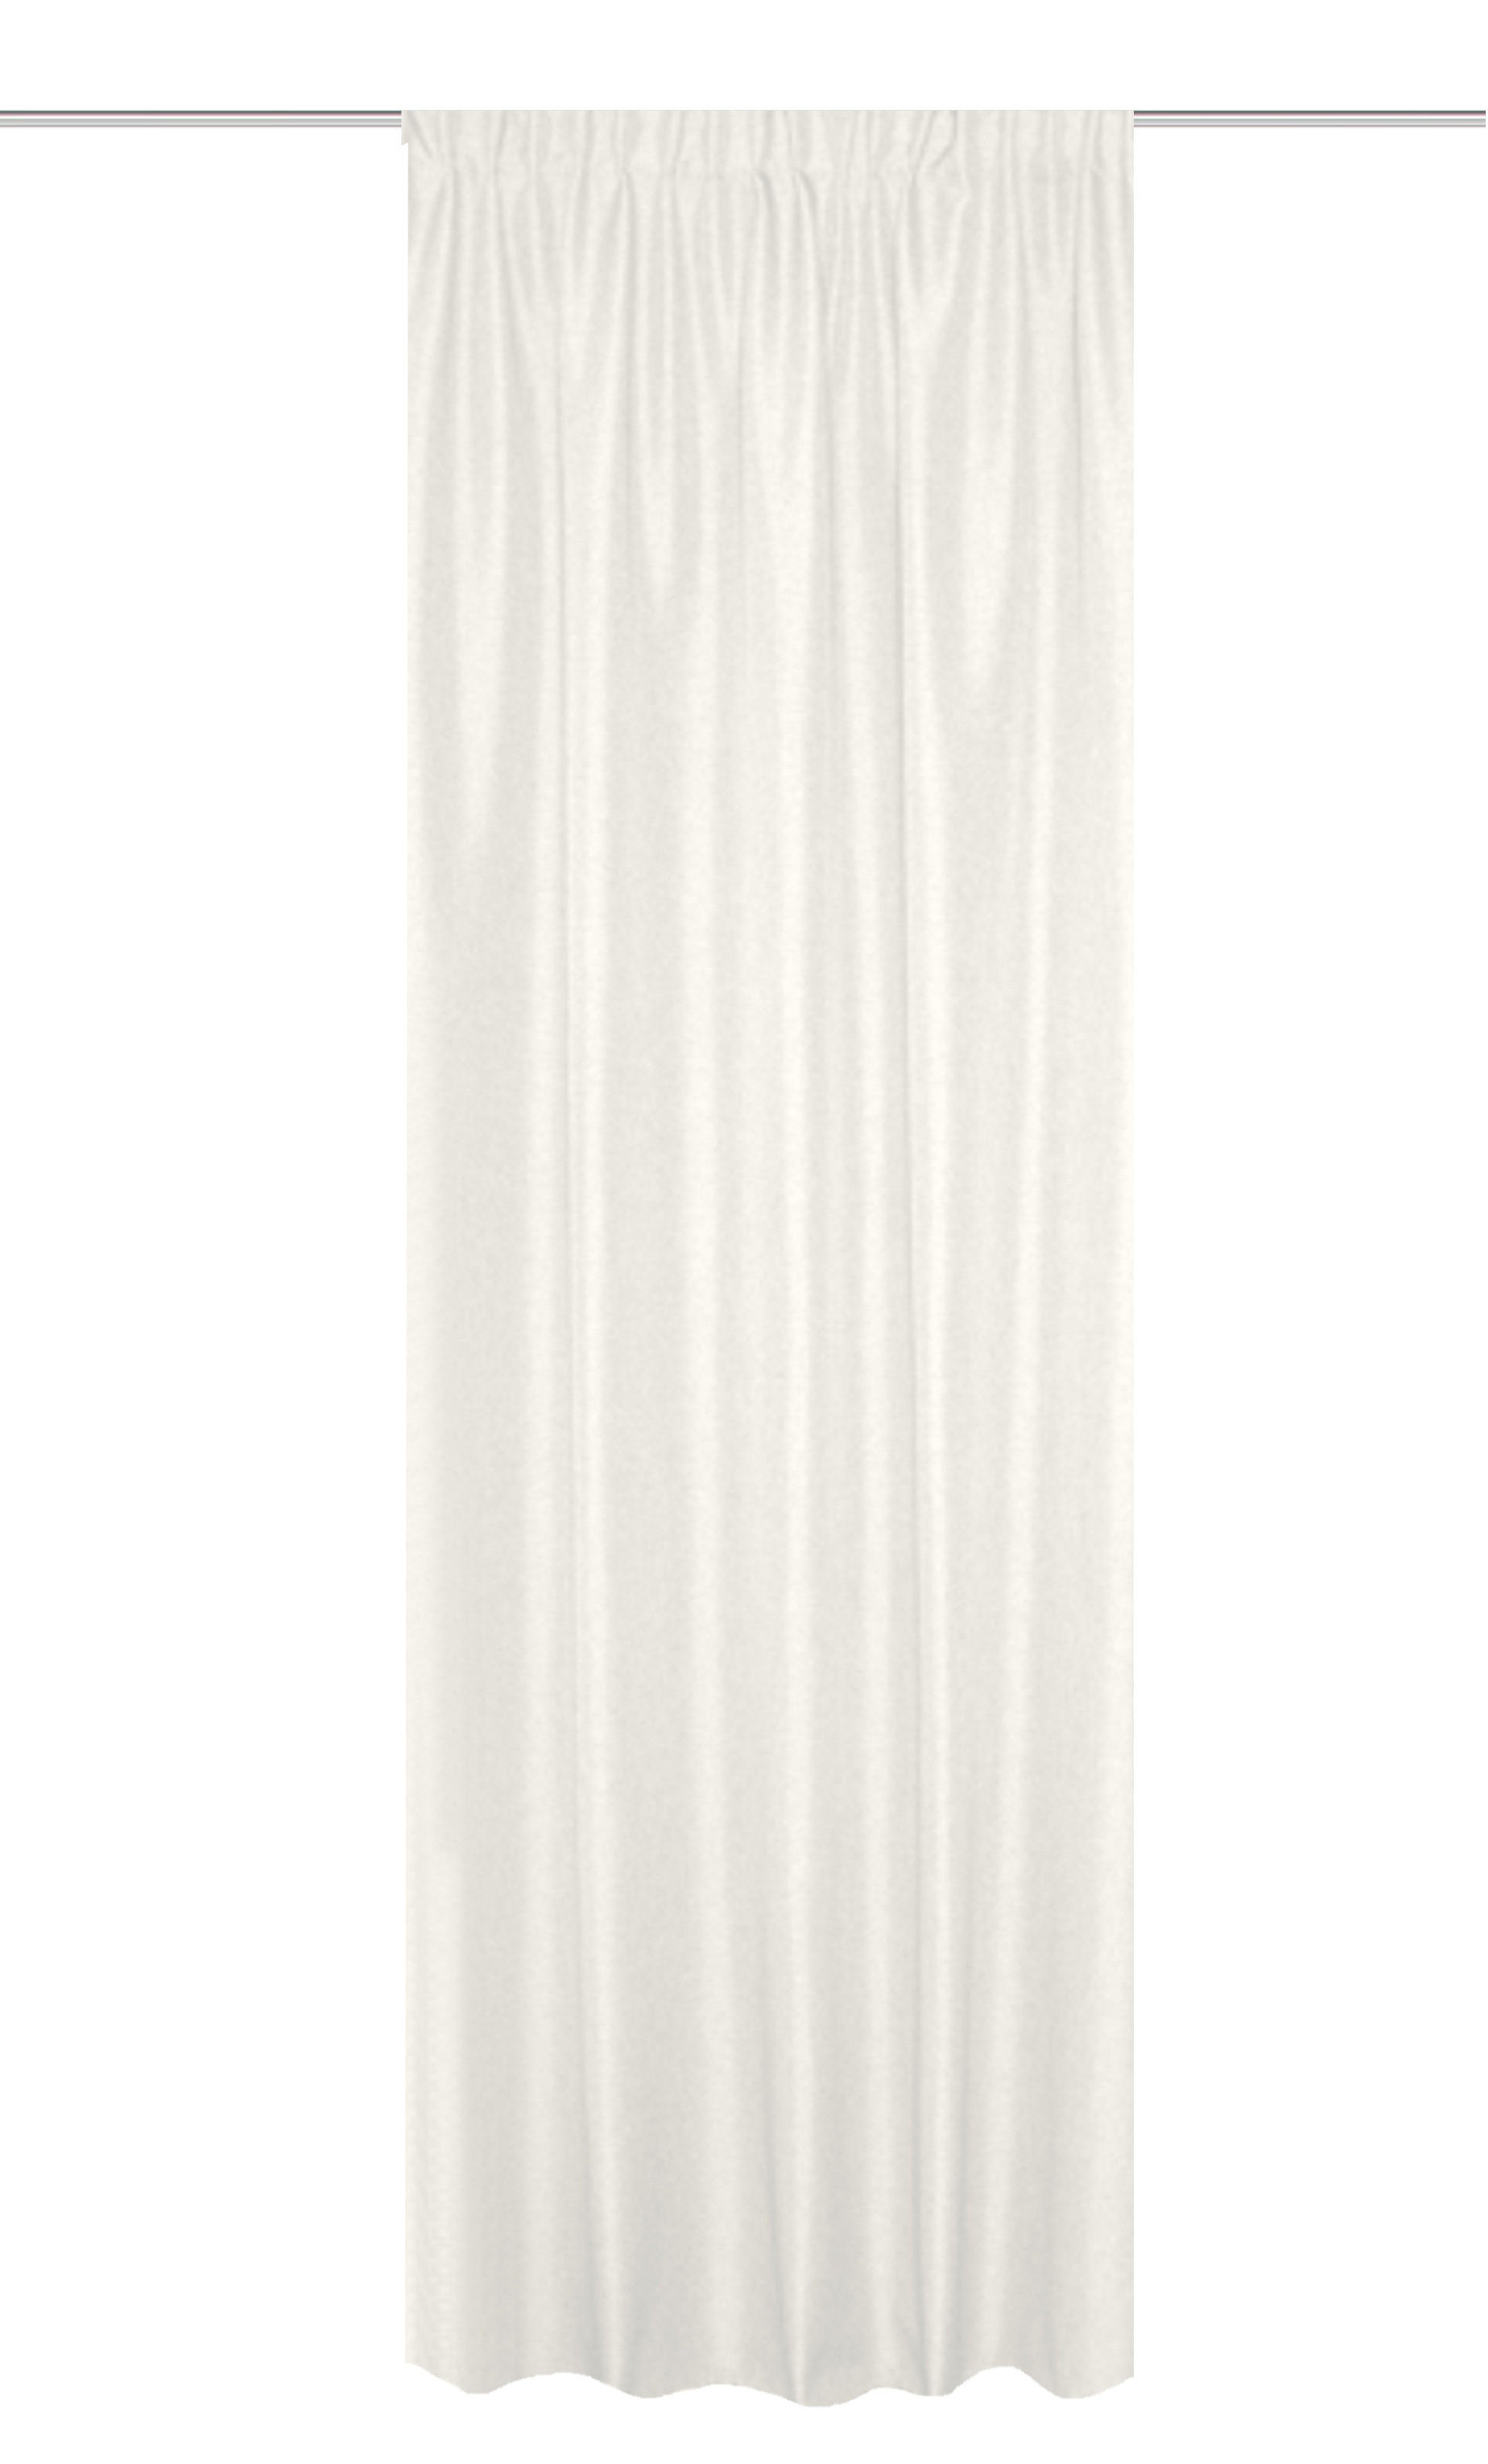 WÄRMESCHUTZVORHANG  blickdicht  135/300 cm   - Weiß, Basics, Textil (135/300cm)